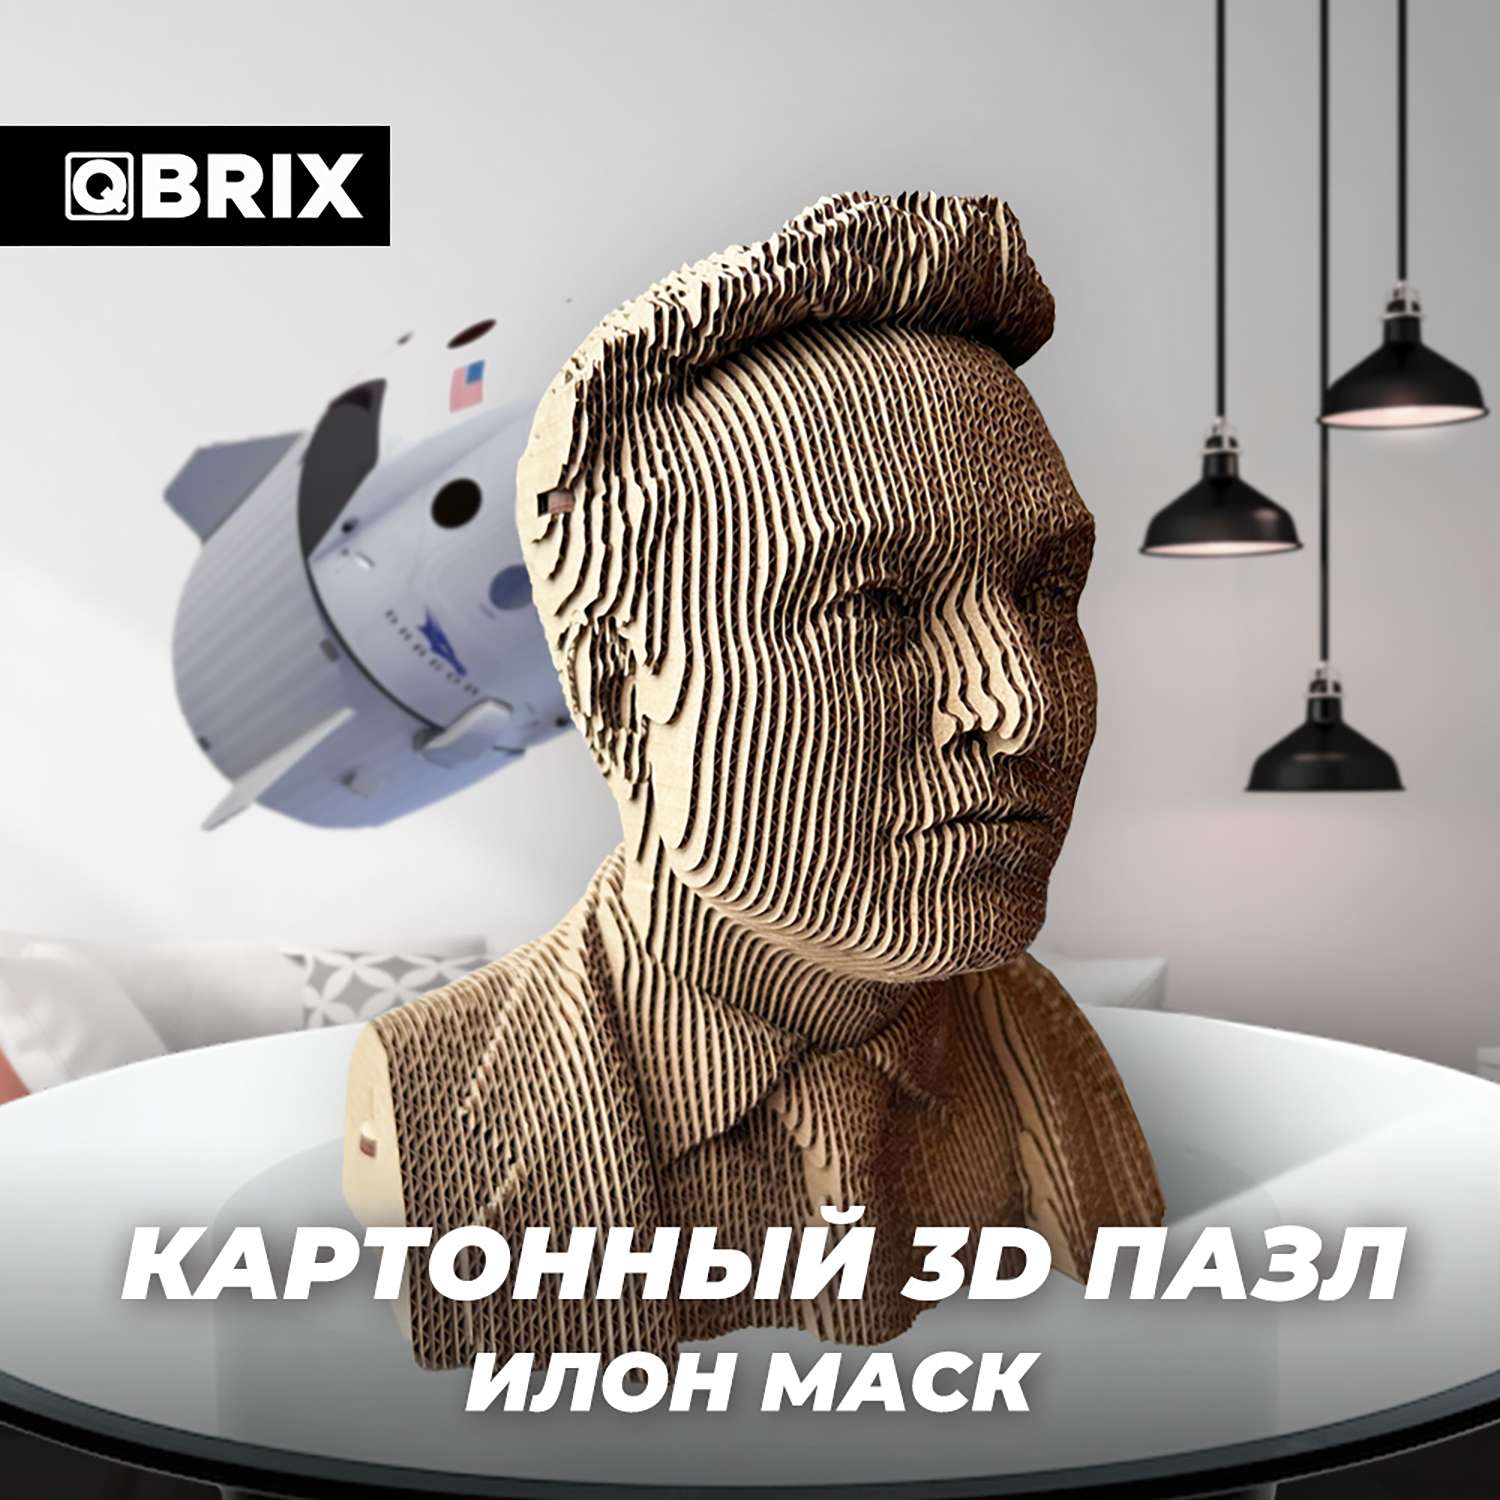 Конструктор QBRIX 3D картонный Илон Маск 20027 20027 - фото 5